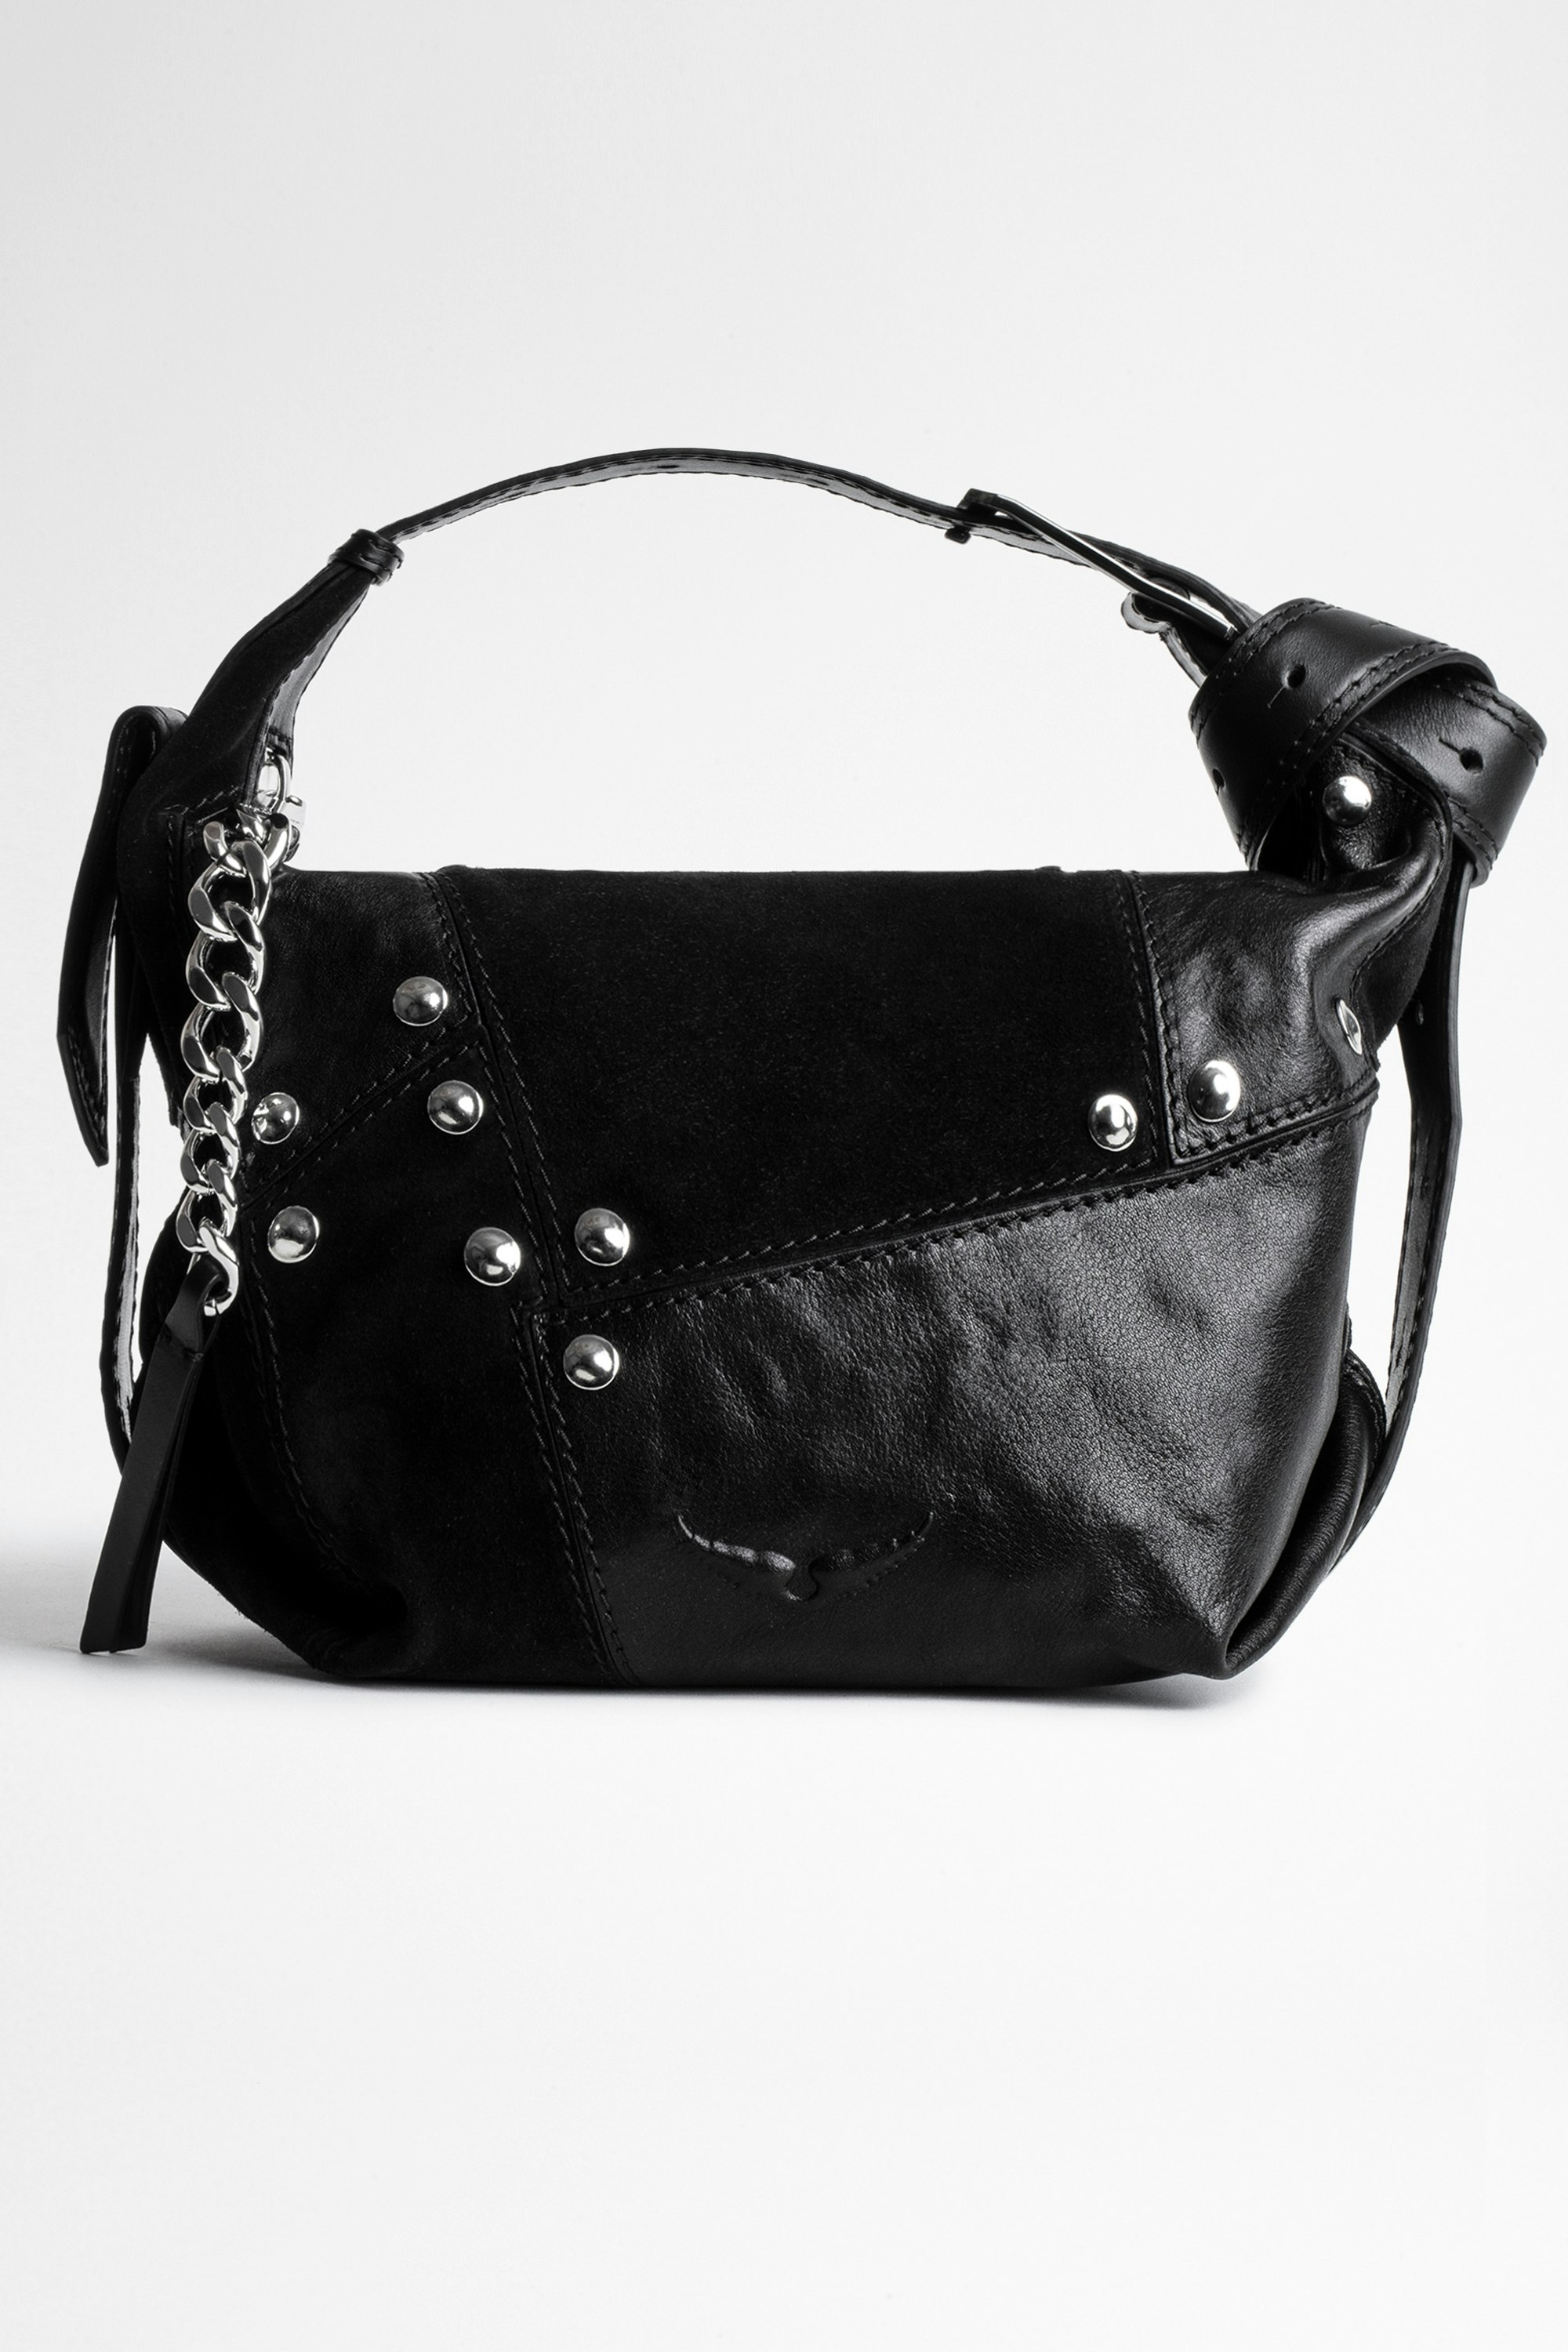 Le Cecilia Patchwork Studs Bag Women’s Le Cecilia black patchwork leather bag